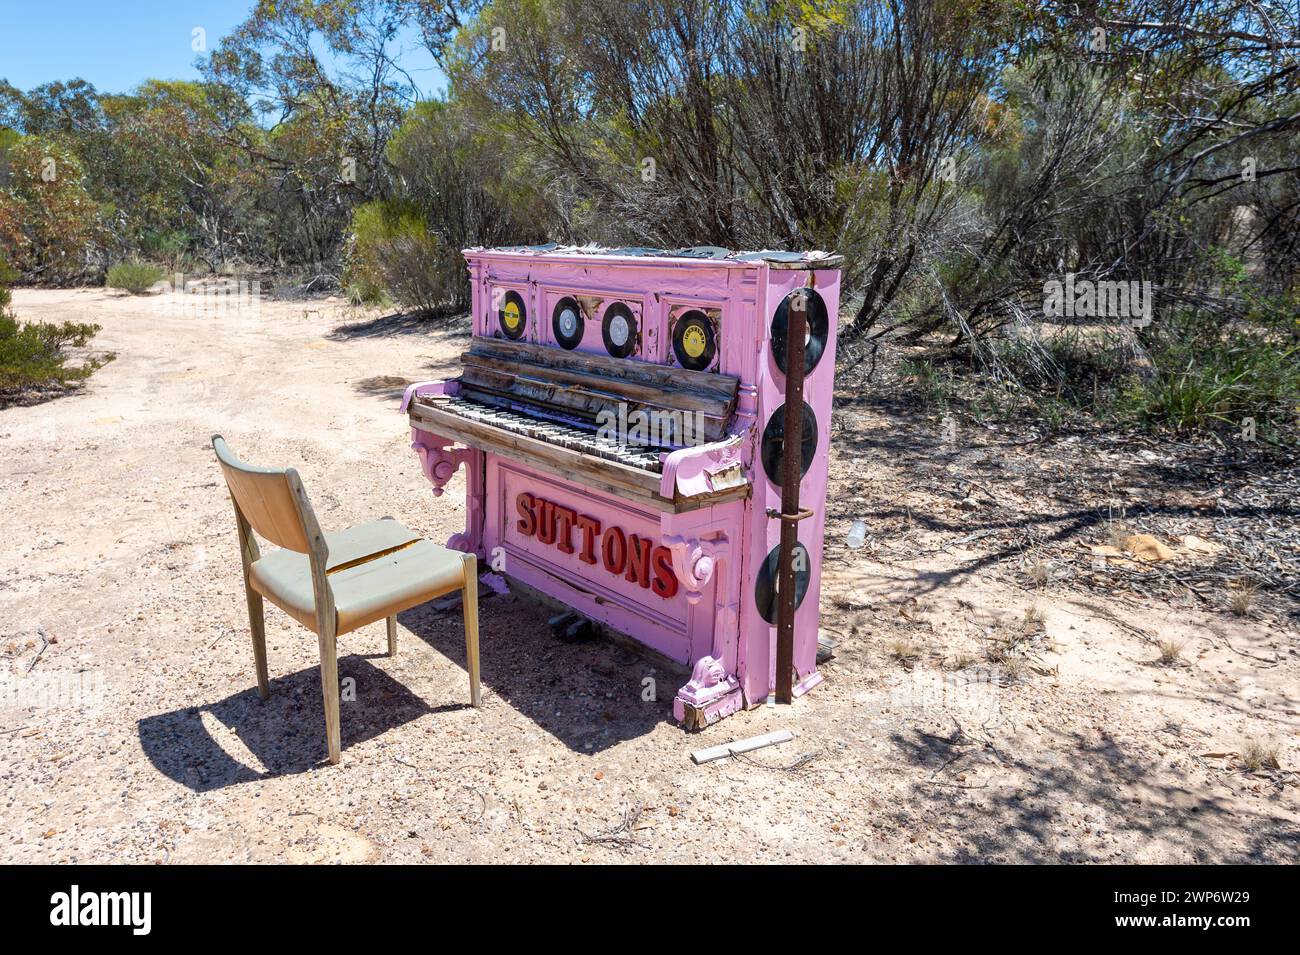 Ein rosafarbenes Klavier ist eine skurrile Ausstellung entlang einer Straße, eine unterhaltsame Art, Touristen anzuziehen, Kimba, South Australia, SA, Australien Stockfoto